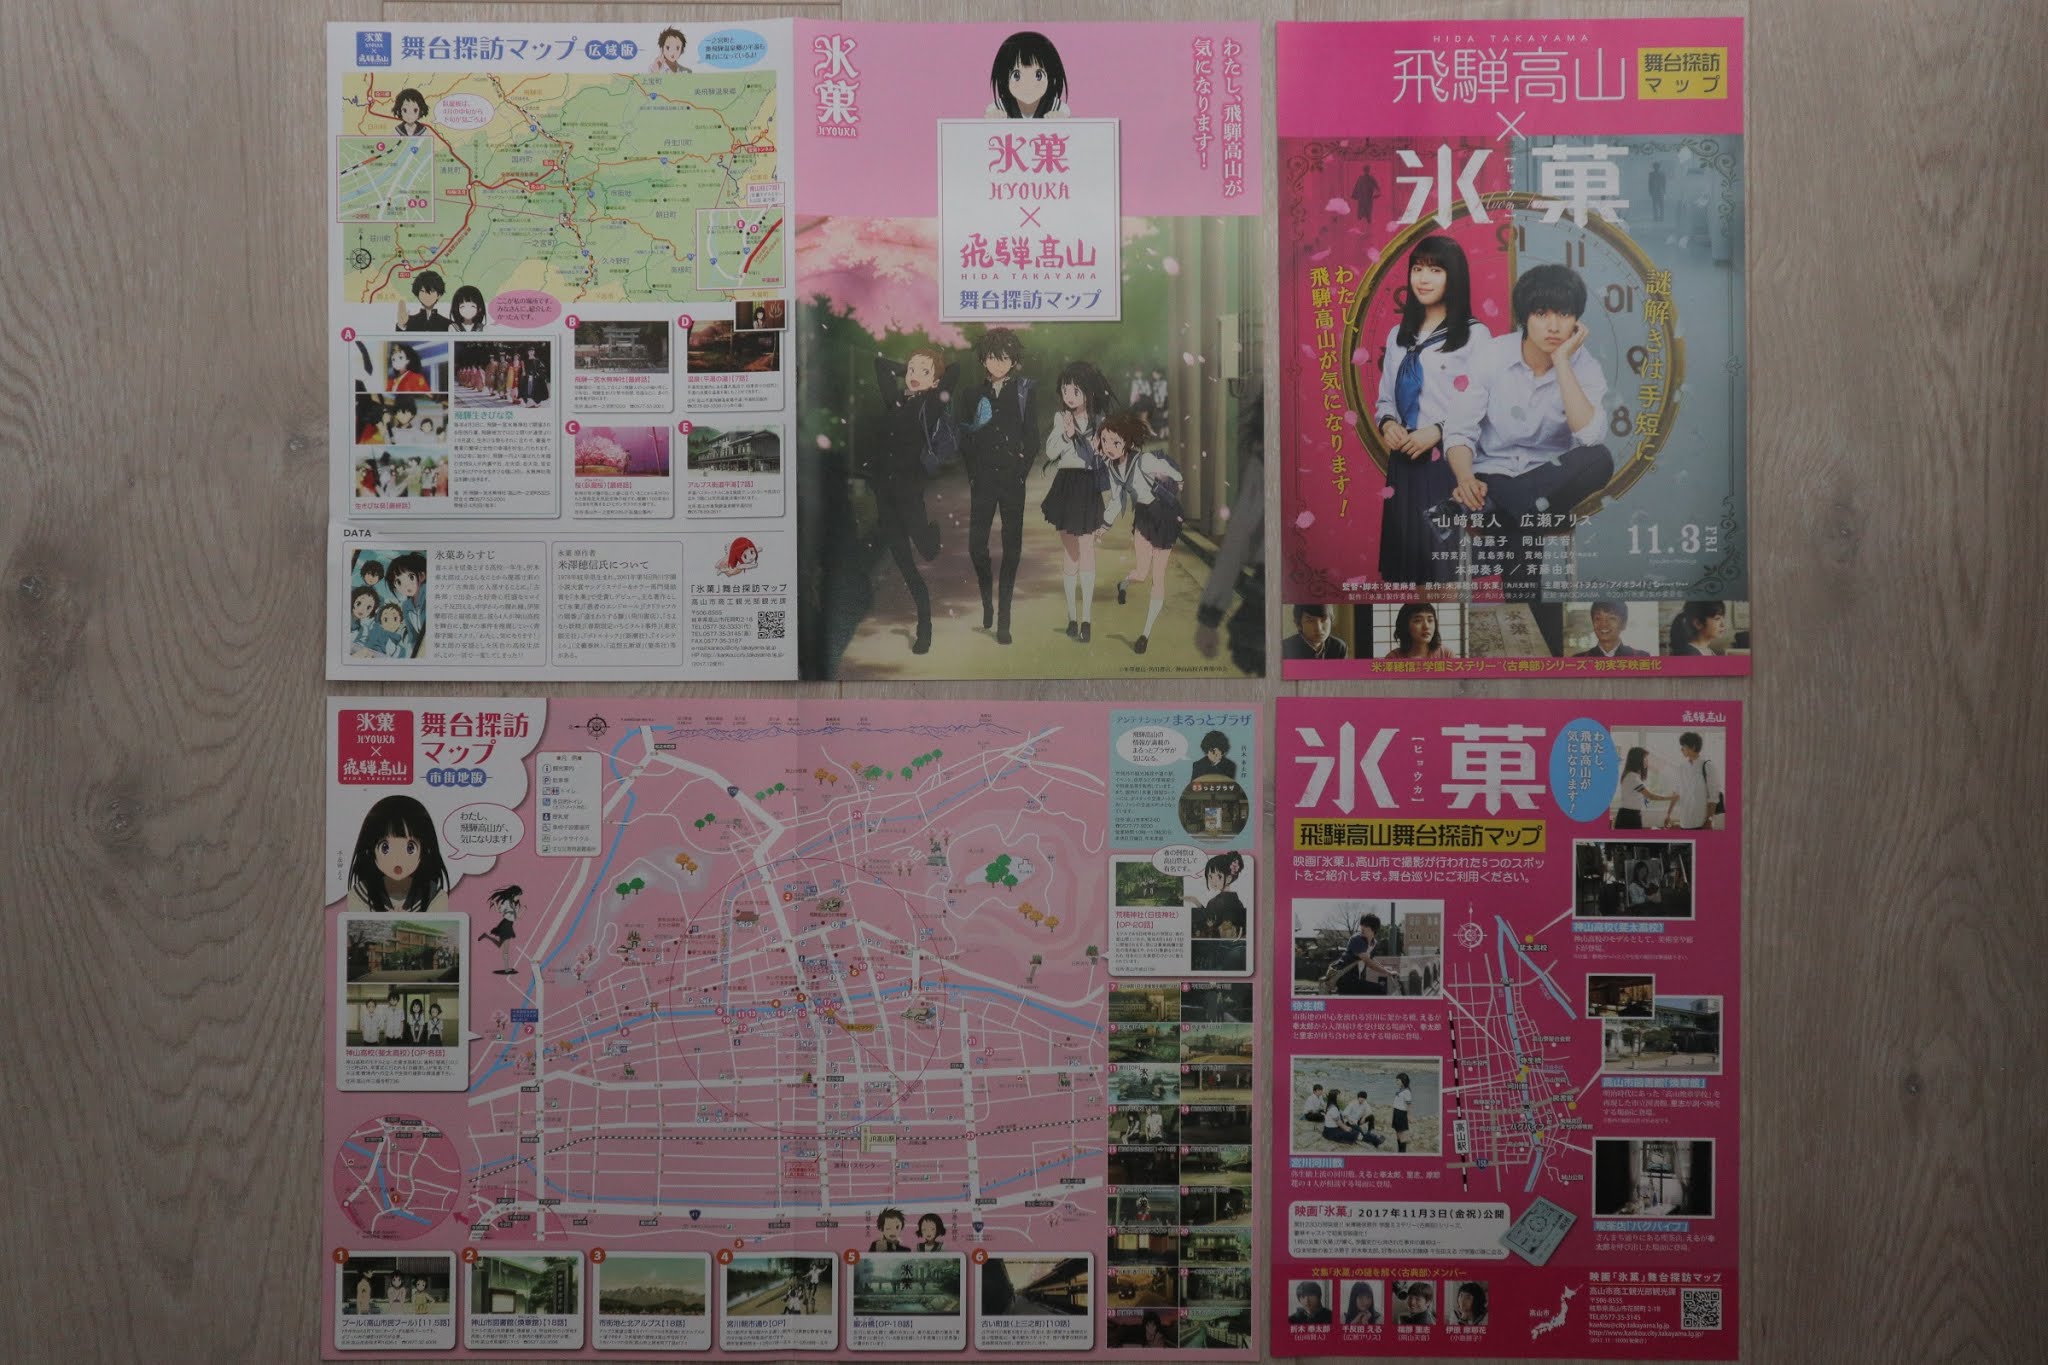 hyouka movie map